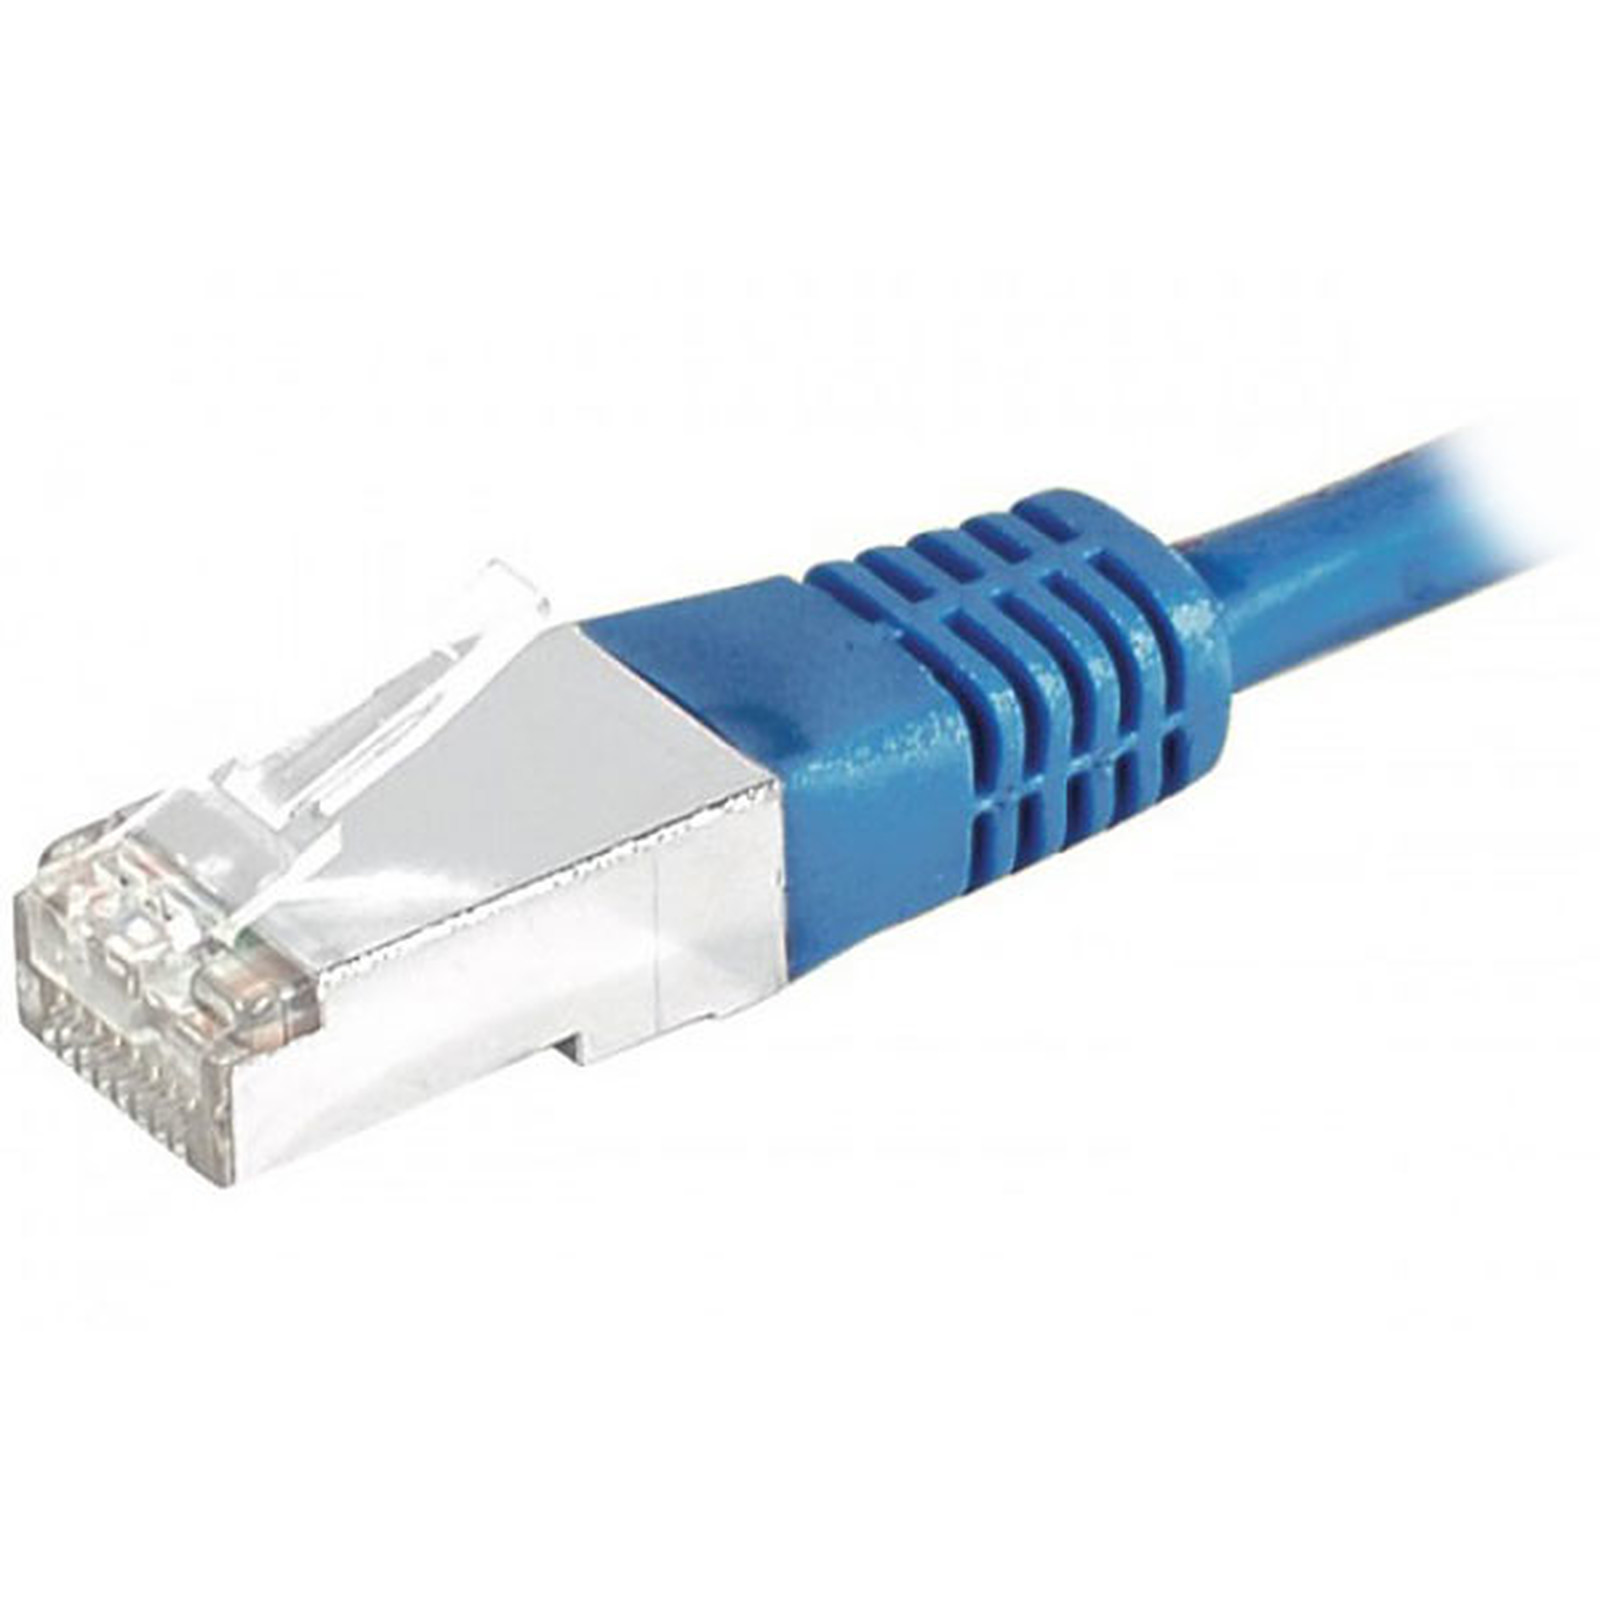 Cable RJ45 categorie 6 S/FTP 0.30 m (Bleu) - Cable RJ45 Generique